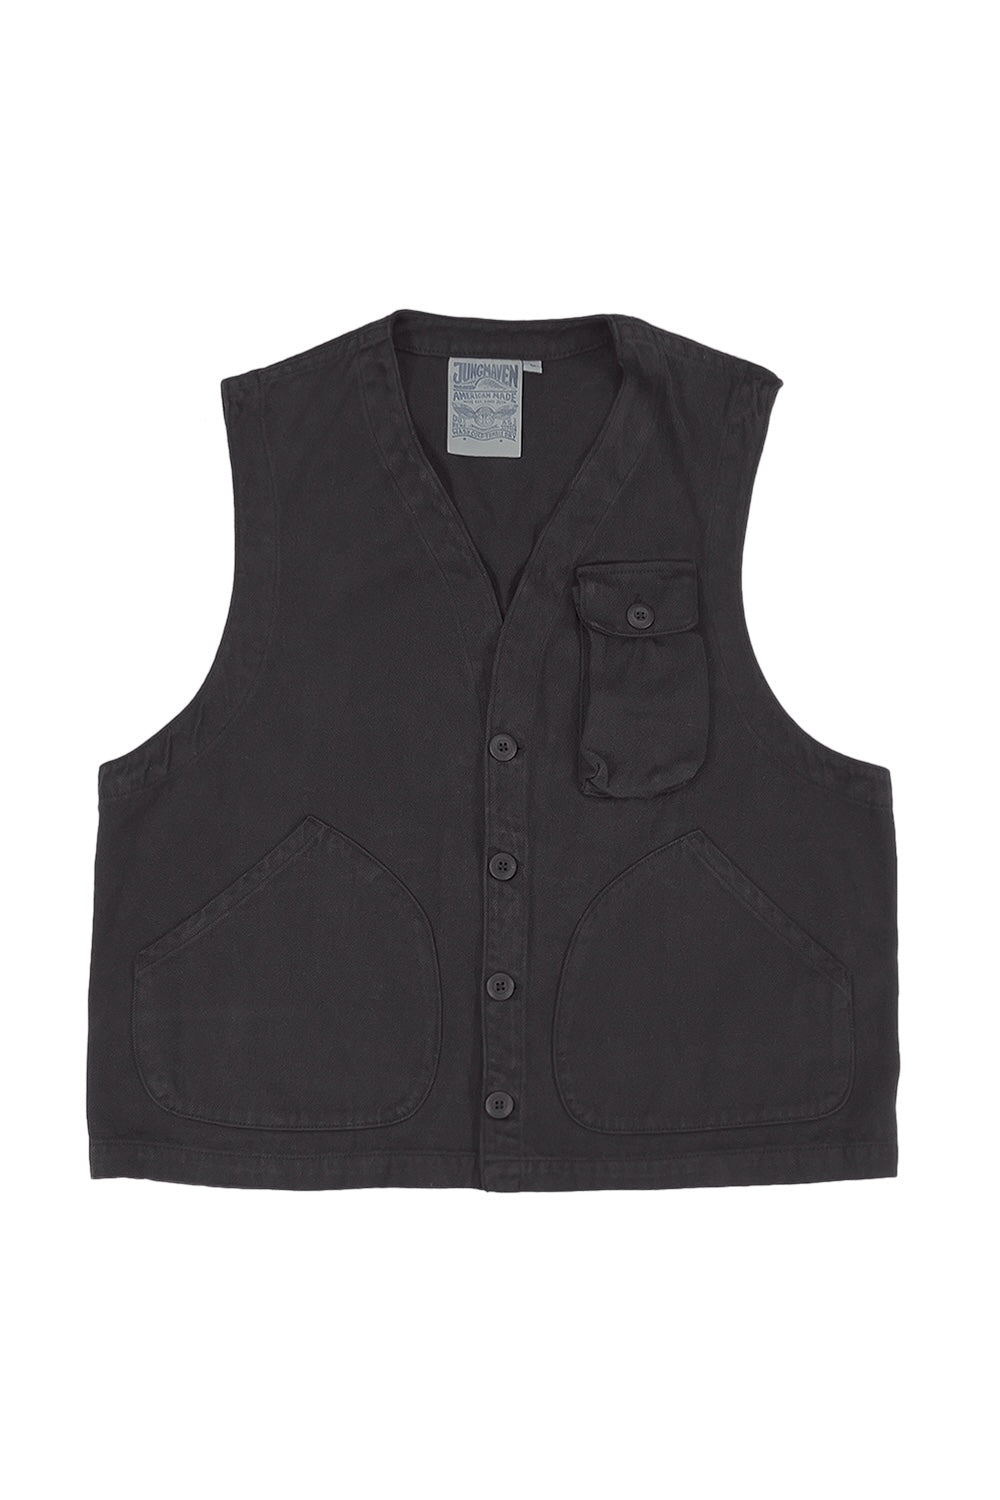 Falcon Vest | Jungmaven Hemp Clothing & Accessories / Color: Black